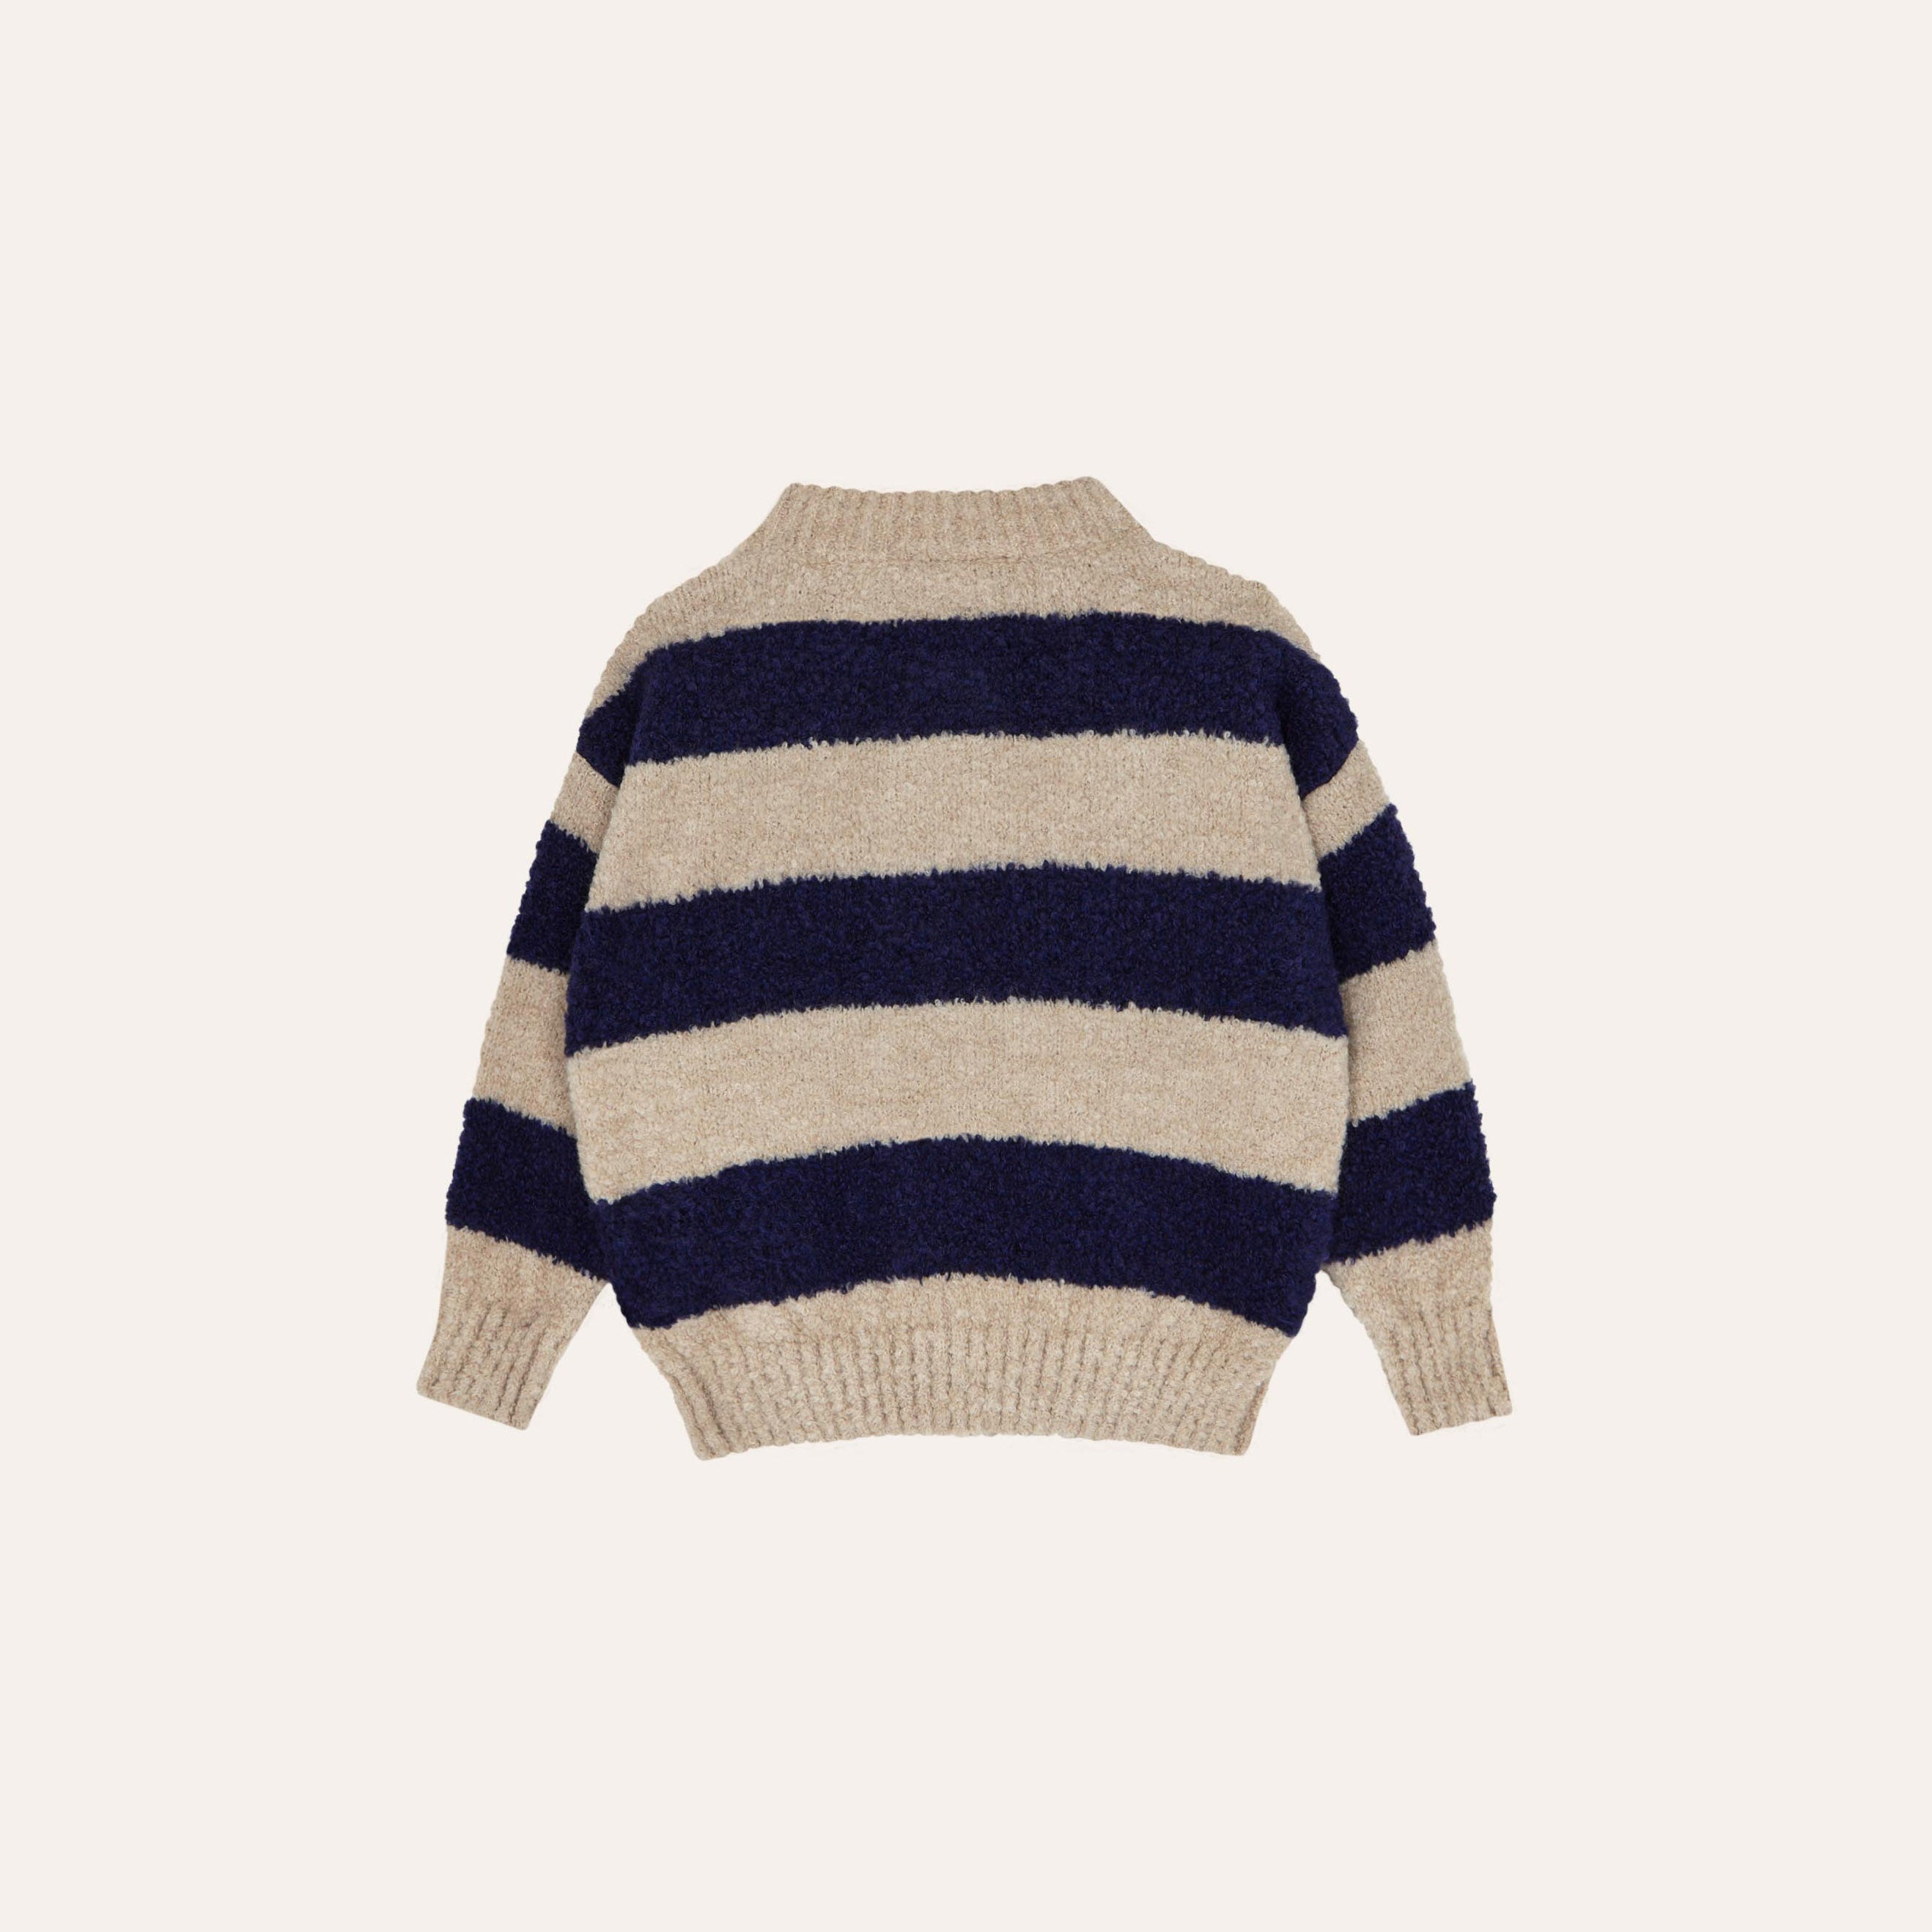 Boys & Girls Blue Stripes Knit Cardigan